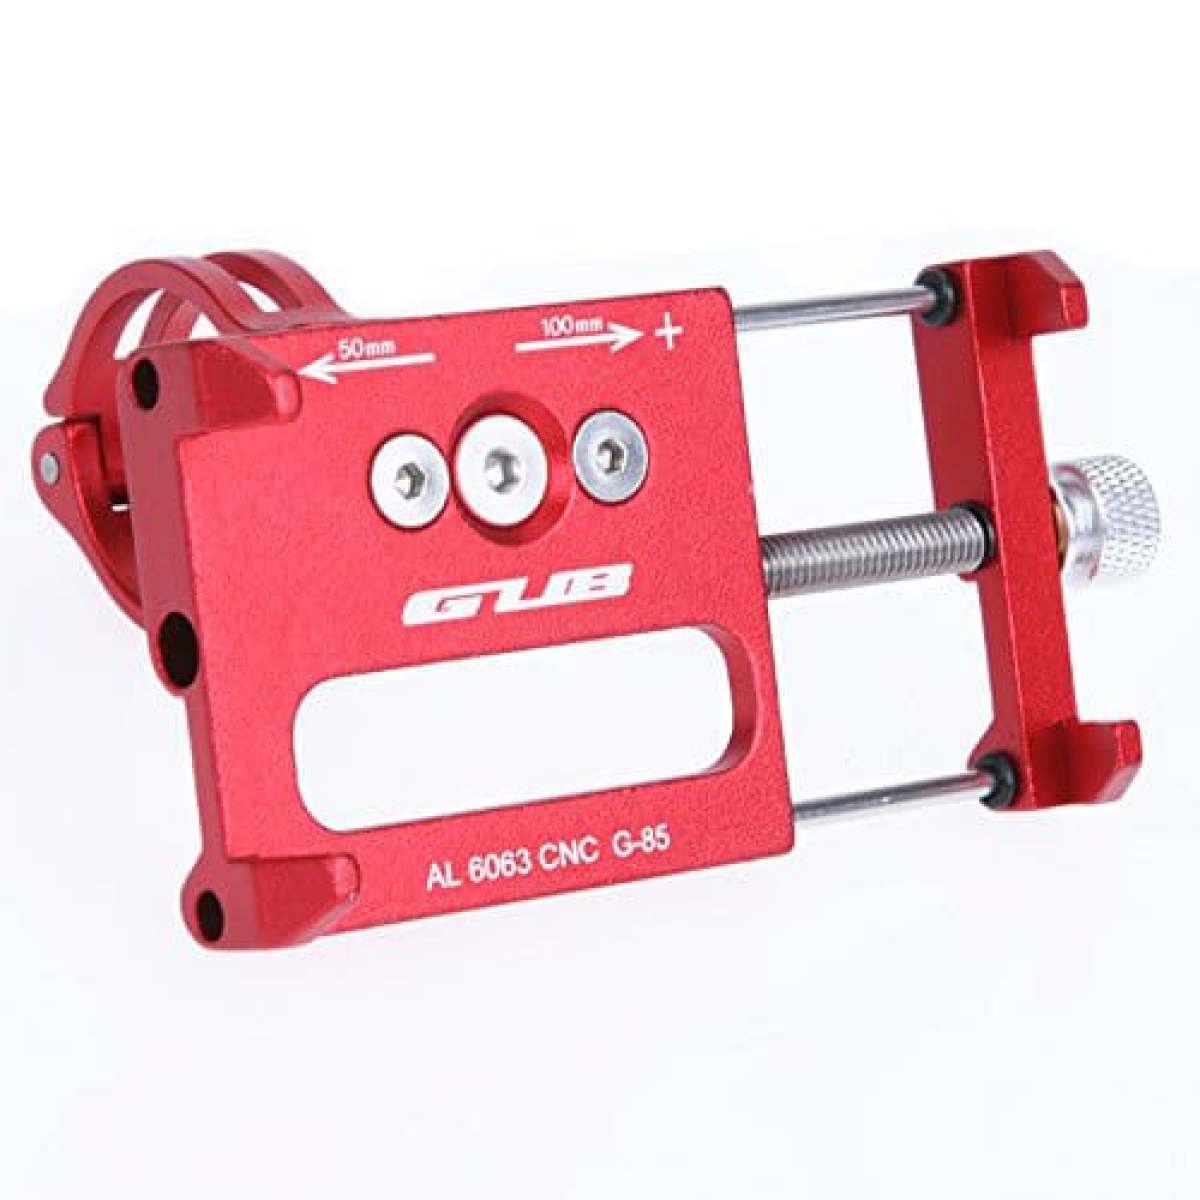 Βάση κινητού τηλεφώνου Gub G-85 από αλουμίνιο 55-100mm για ηλεκτρικό σκούτερ ή ποδηλάτου κόκκινη - 4